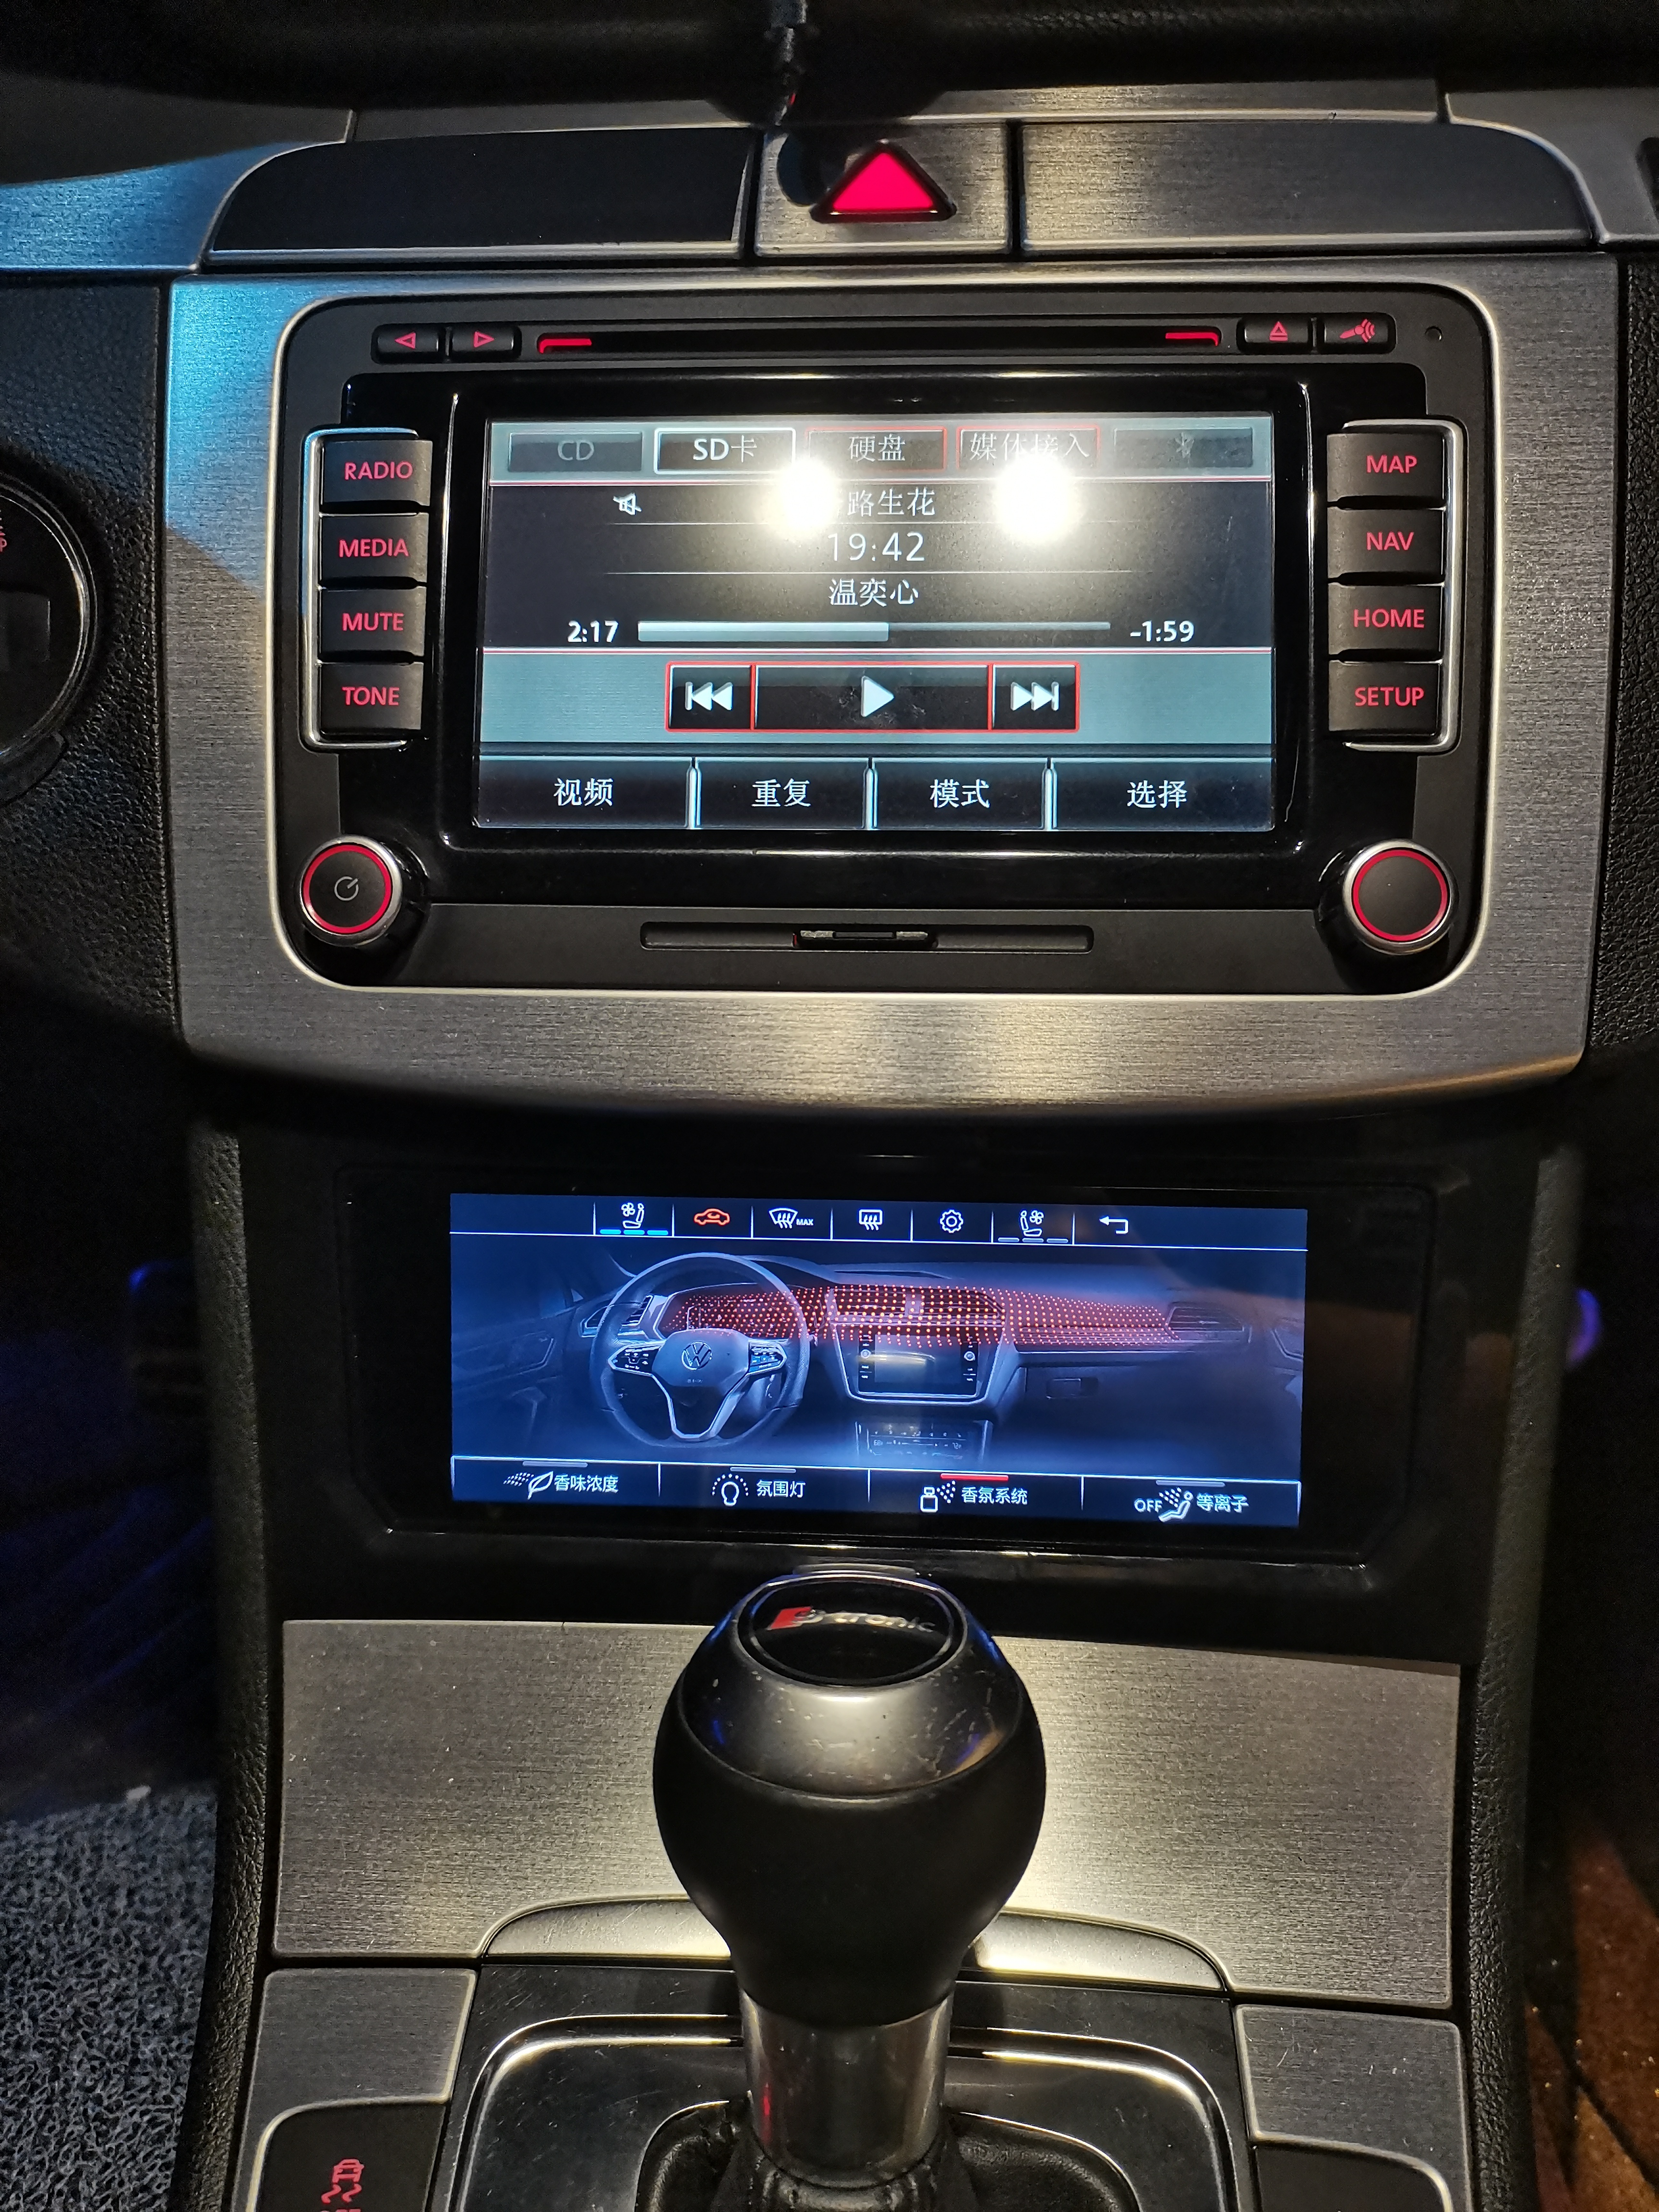 Vergleich der Klimabedienteile für VW Golf 6 und VW Golf 7: LCD-Klimapanel im Fokus